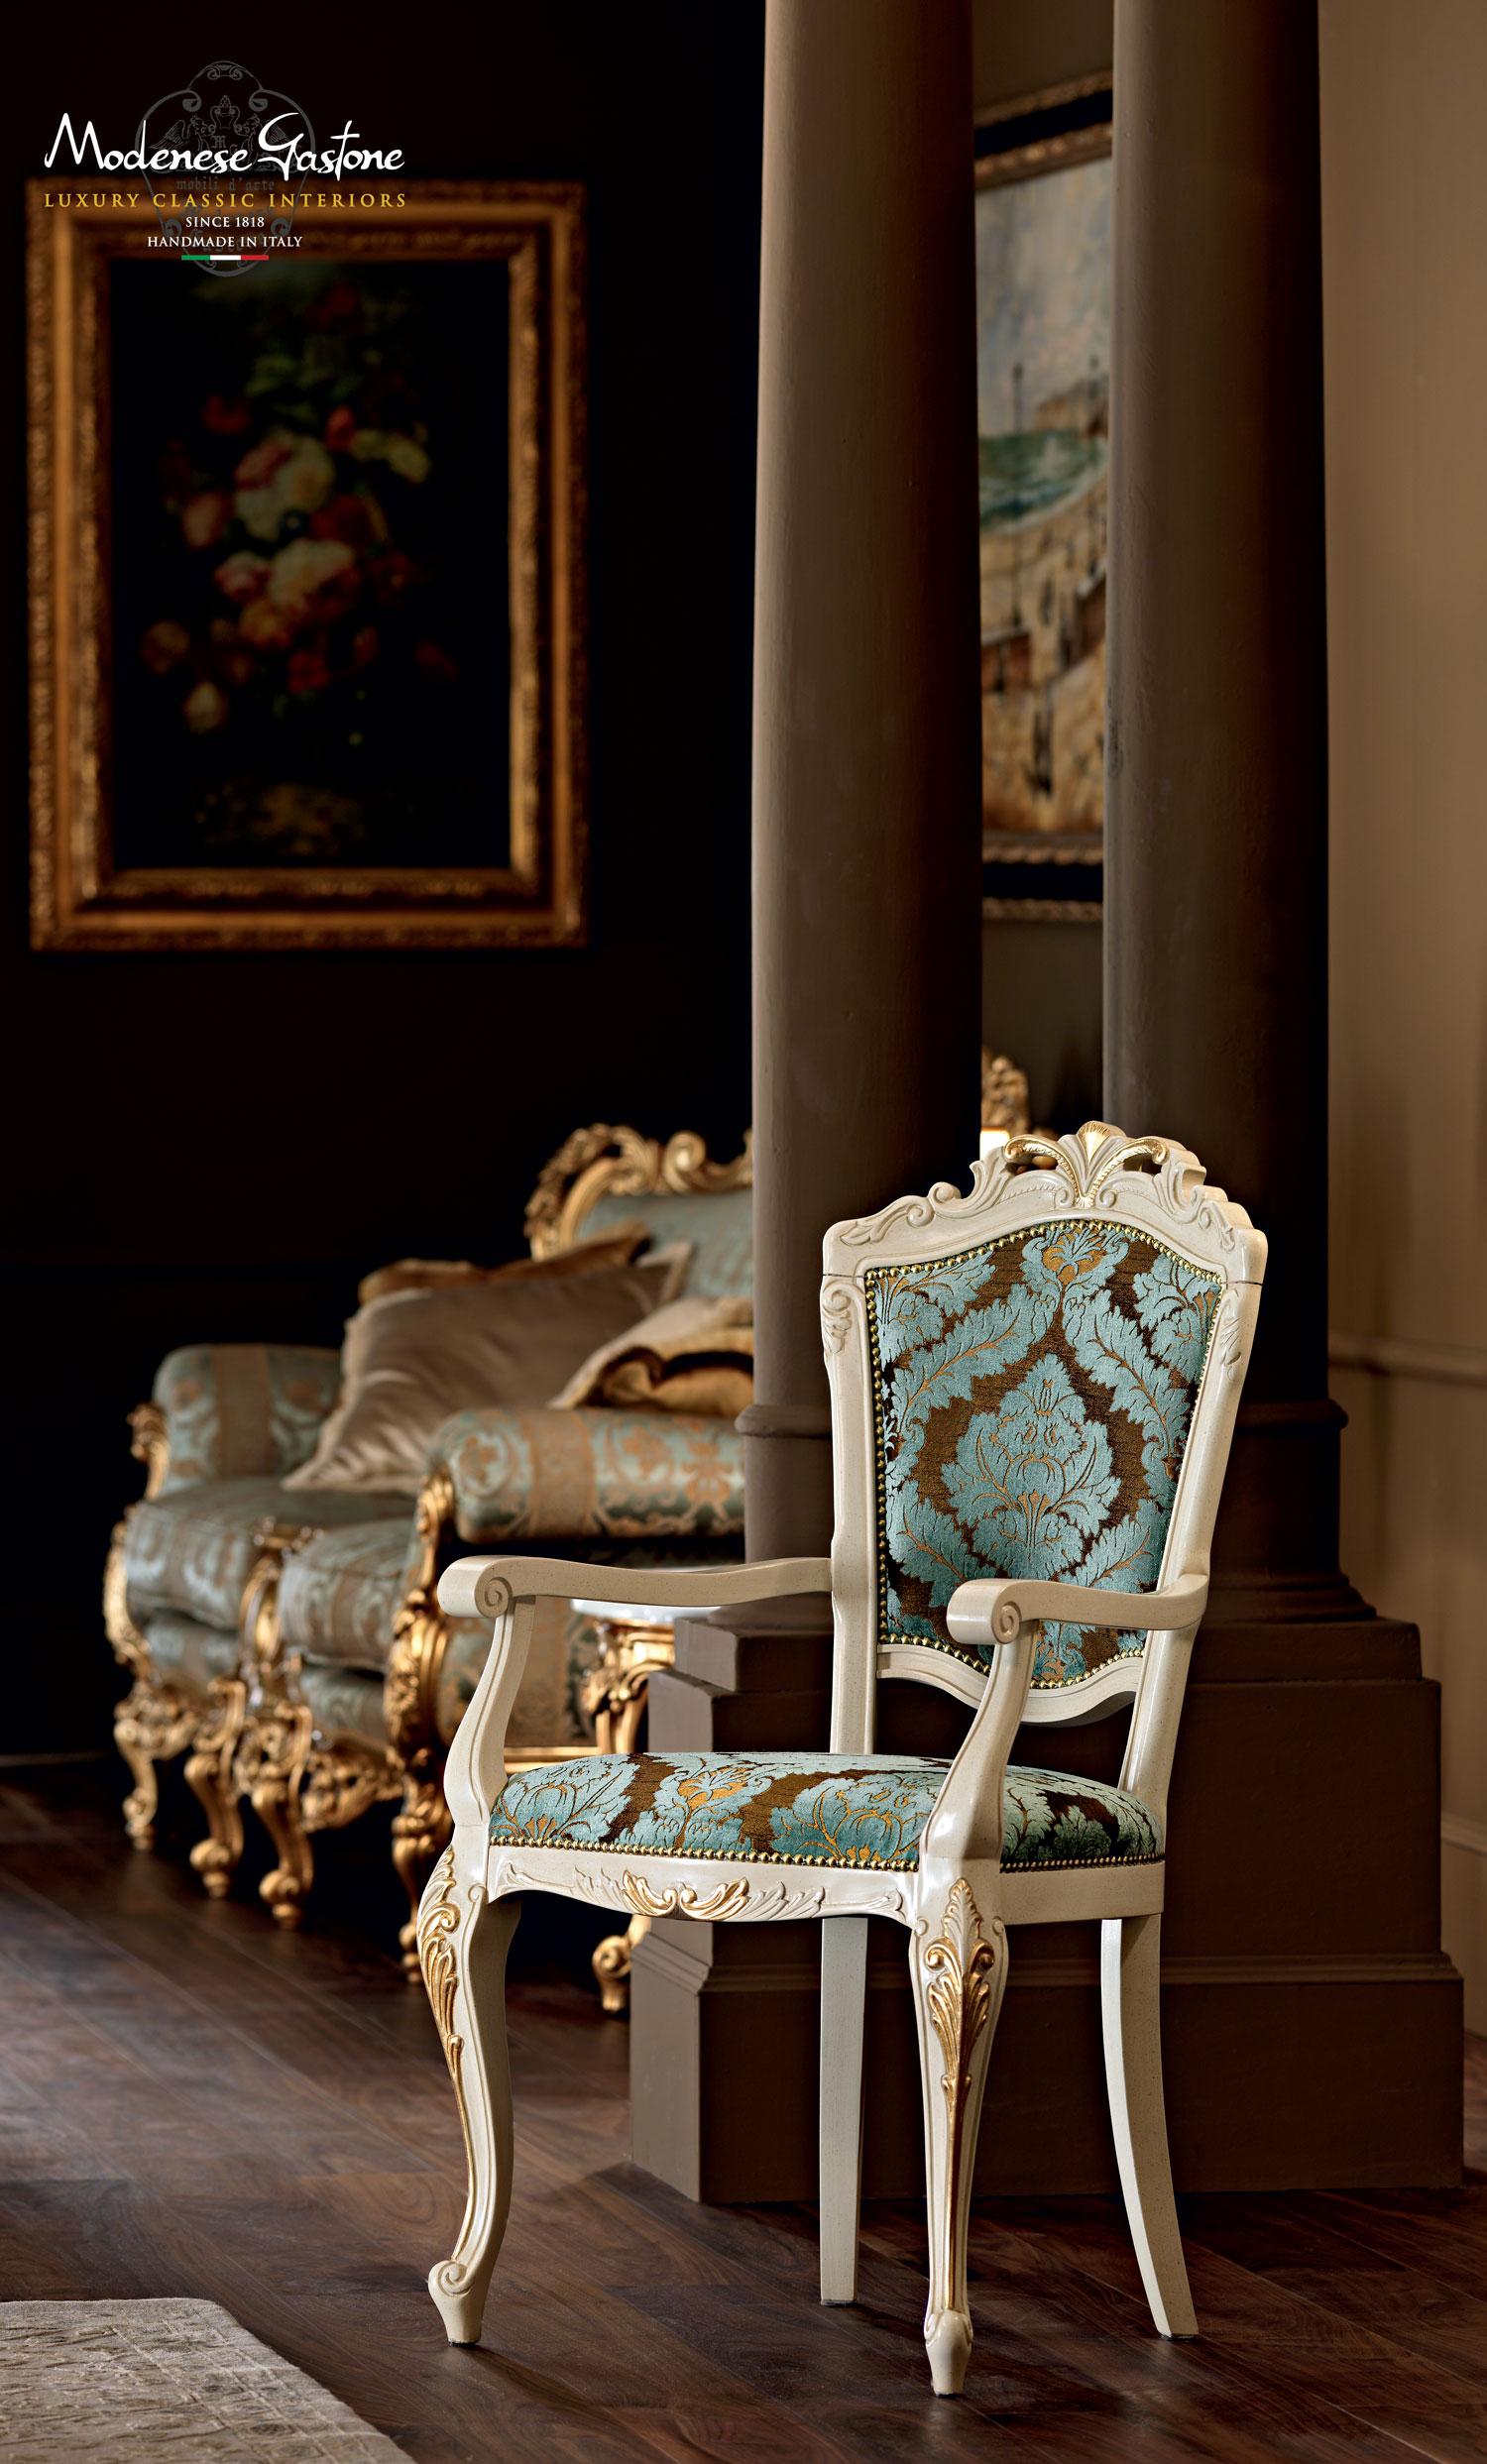 Vervollständigen Sie Ihr elegantes, luxuriöses Esszimmer mit diesem hochwertigen viktorianischen Beistellstuhl von Modenese gastone, mit einem elfenbeinfarben lackierten Holzrahmen und handgefertigten Blattgoldapplikationen. Sitzkissen gepolstert